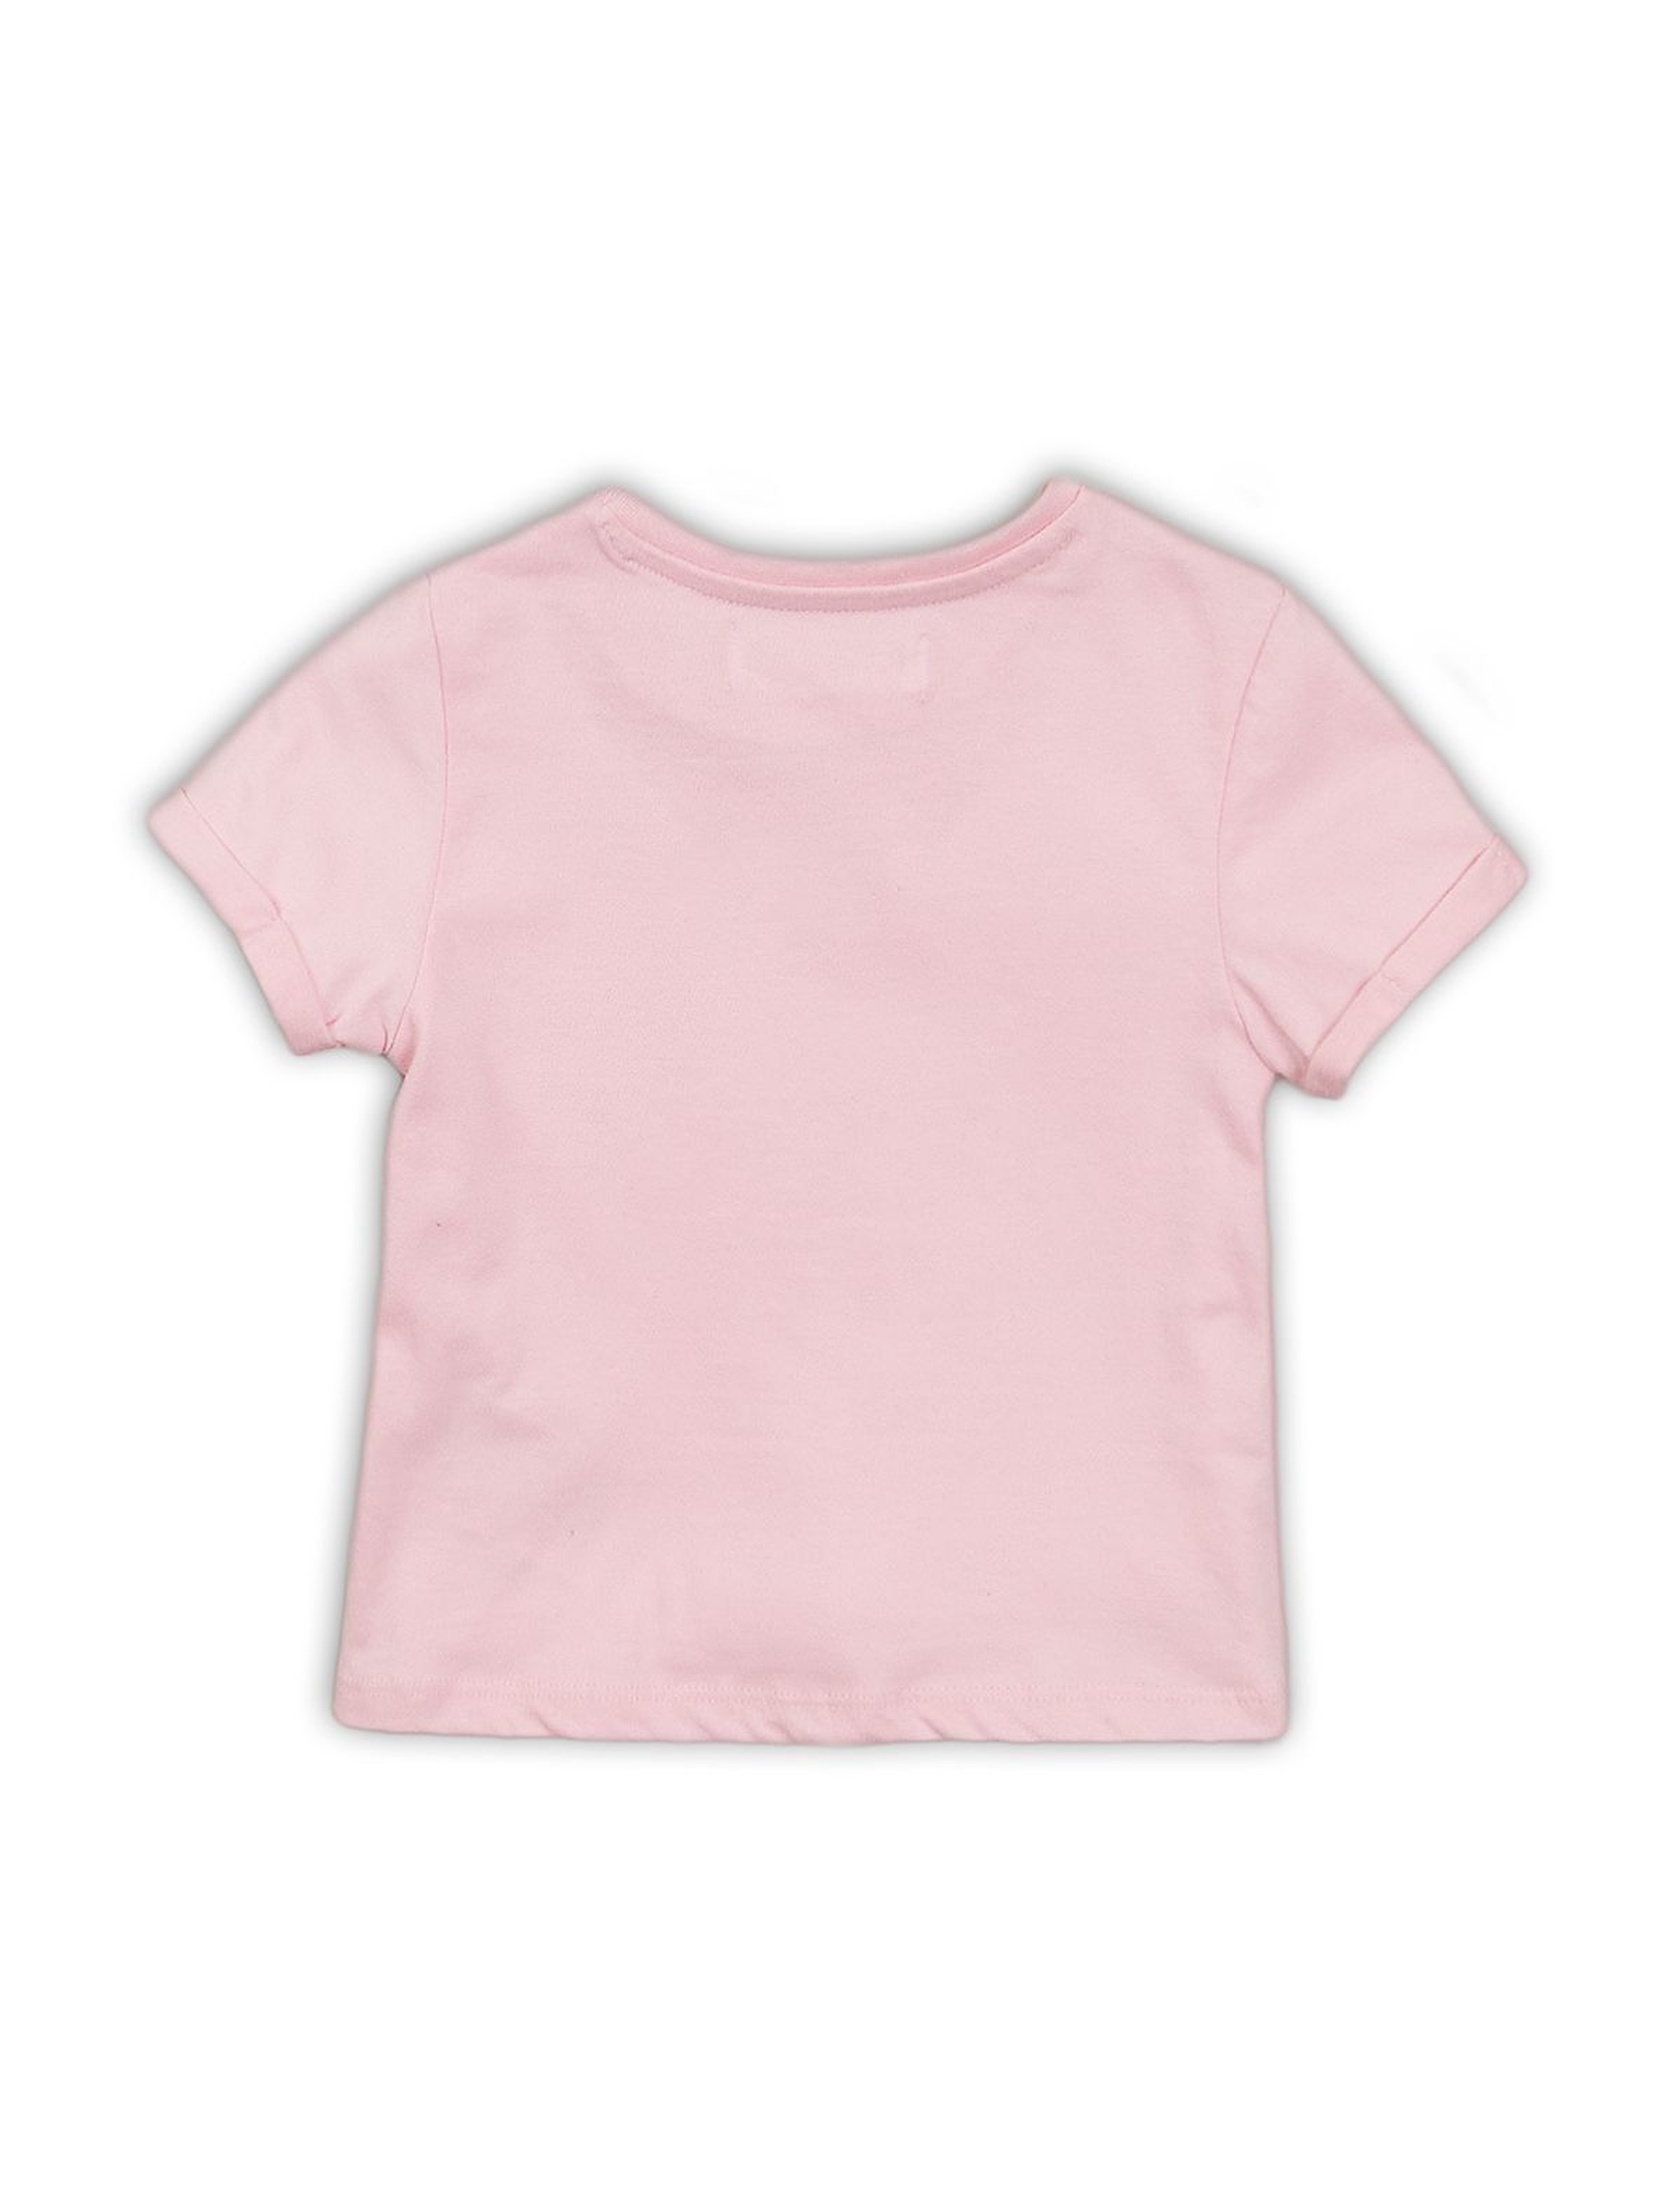 T-shirt dziewczęcy różowy z nadrukami